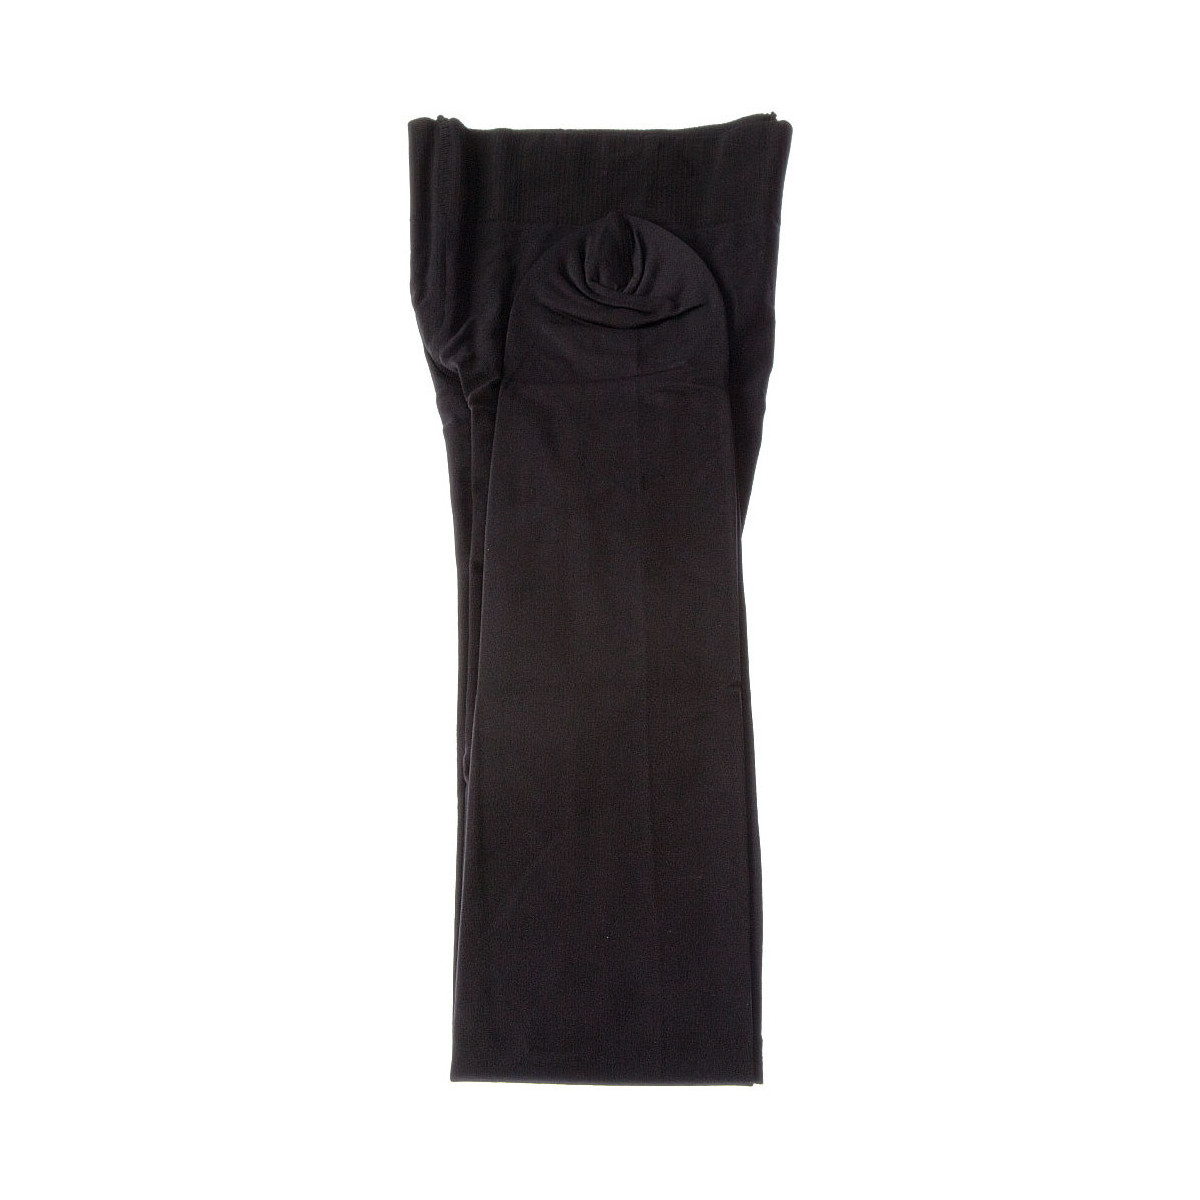 Sous-vêtements Femme Collants & bas Bleuforet Collant chaud - Opaque - Intense Noir